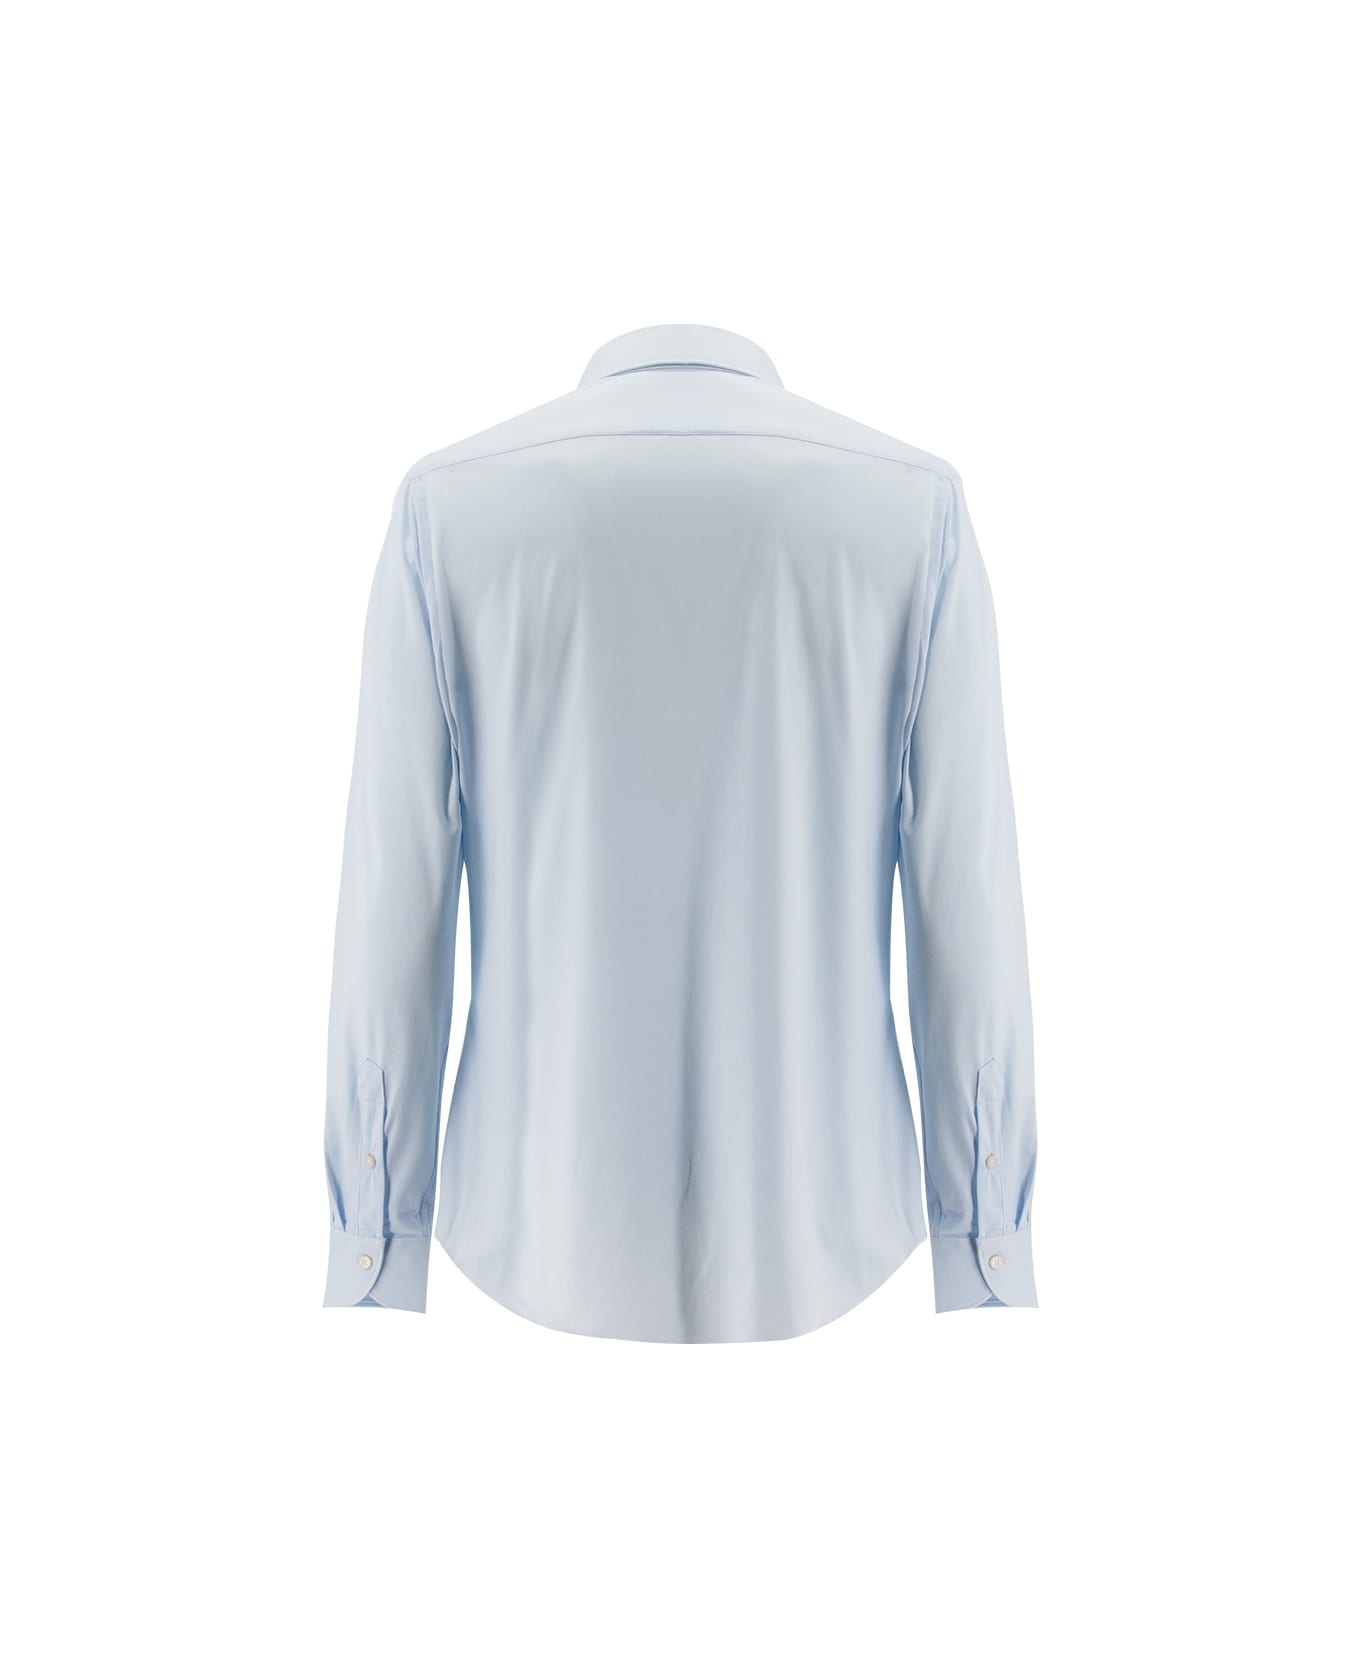 Xacus Shirt - LIGHT BLUE